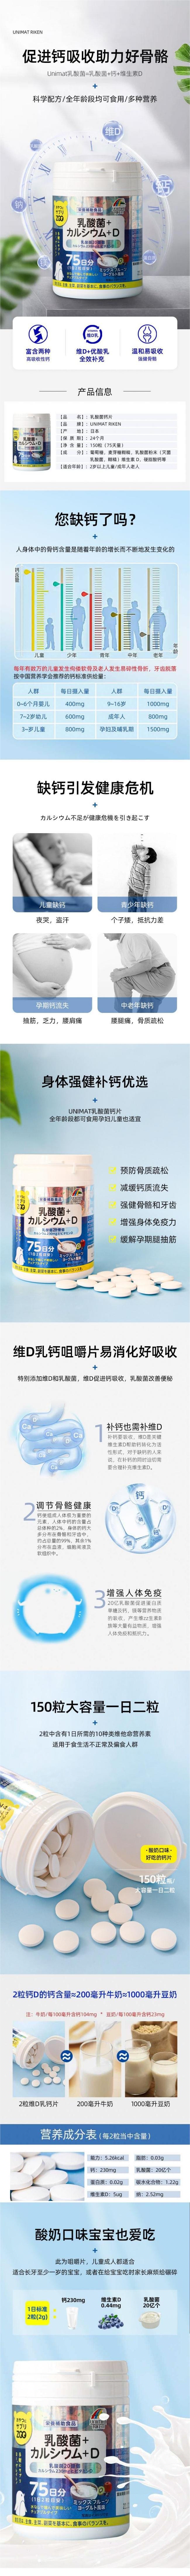 【日本直邮】UNIMATRIKEN ZOO咀嚼片乳酸菌钙片 维生素D 150粒